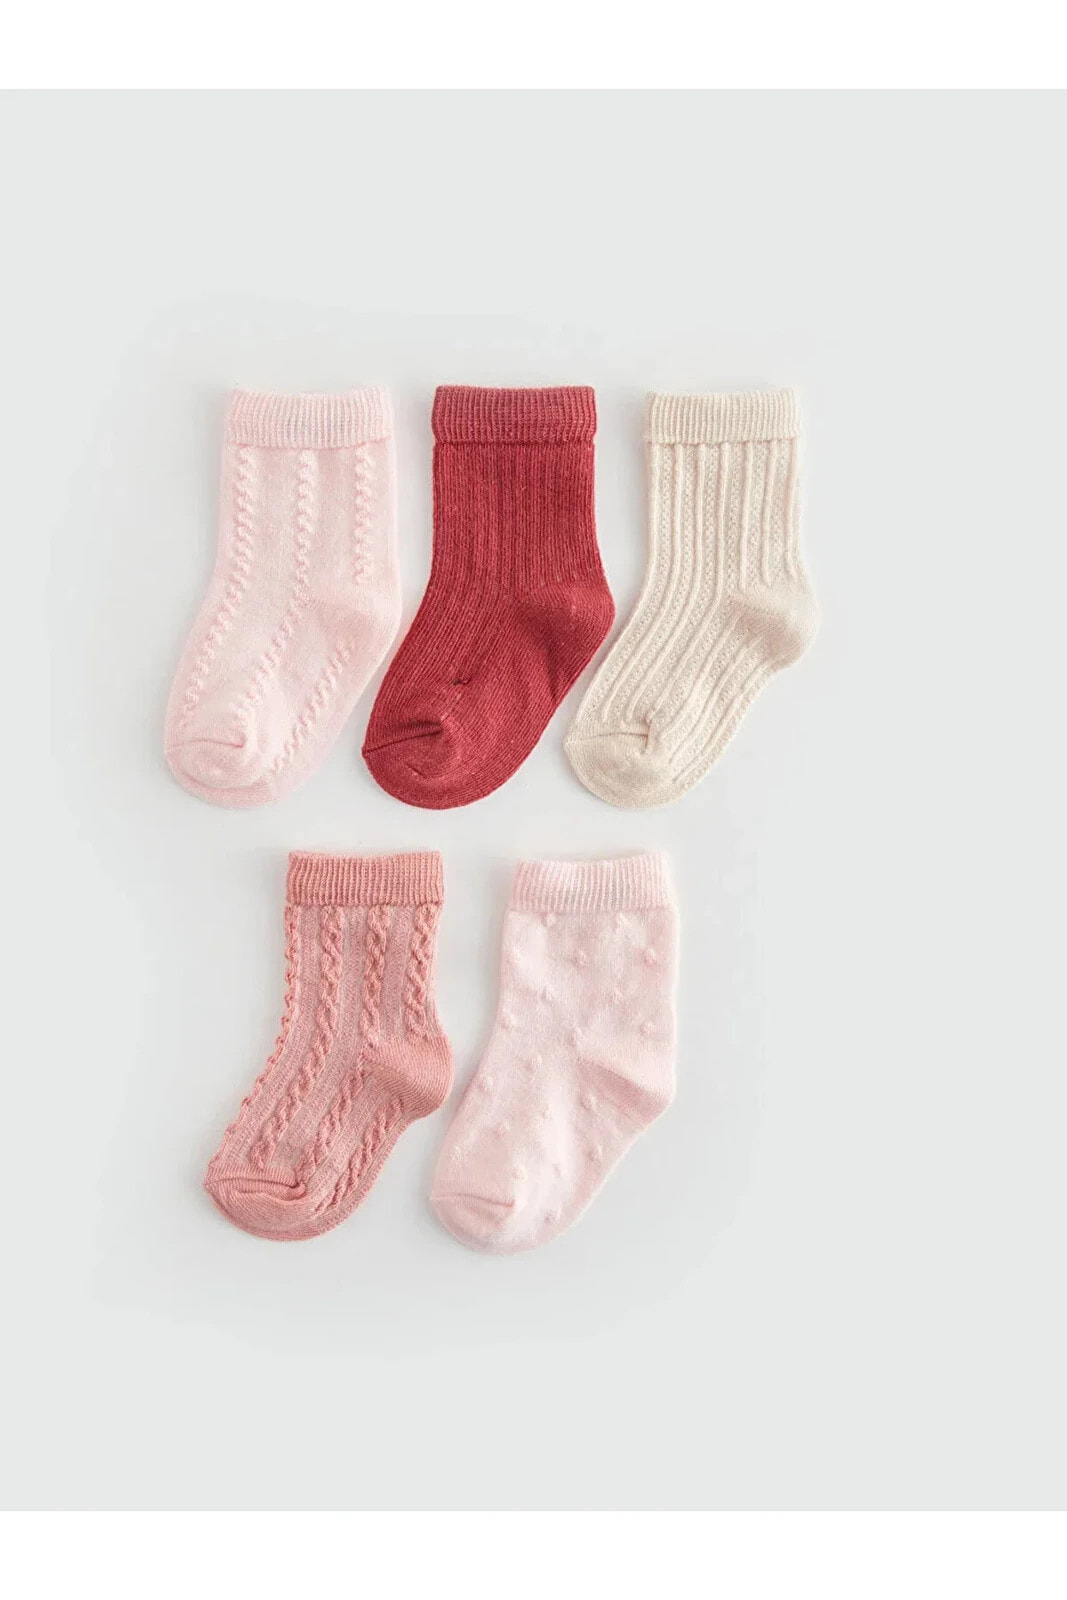 LCW baby Kendinden Desenli Kız Bebek Soket Çorap 5'li